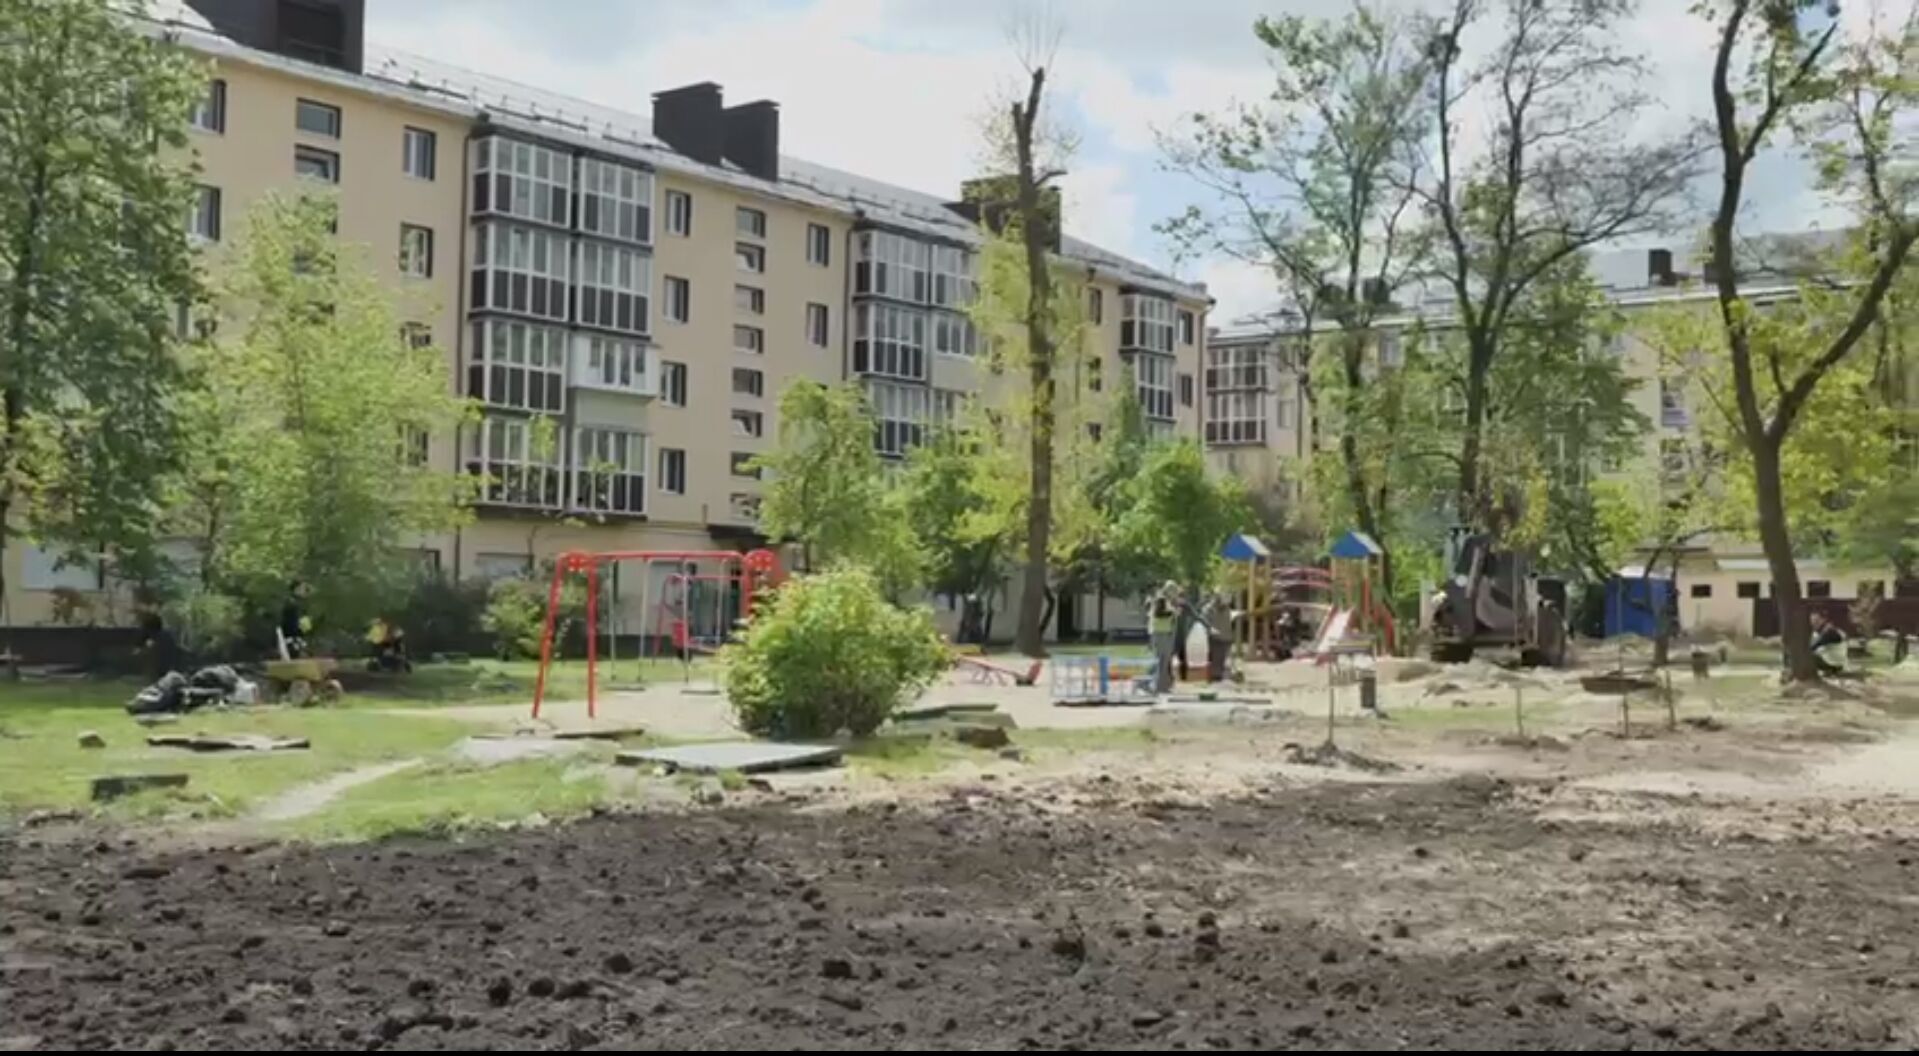 Кличко показал, как отремонтировали три дома, поврежденные в результате российских обстрелов. Фото и видео